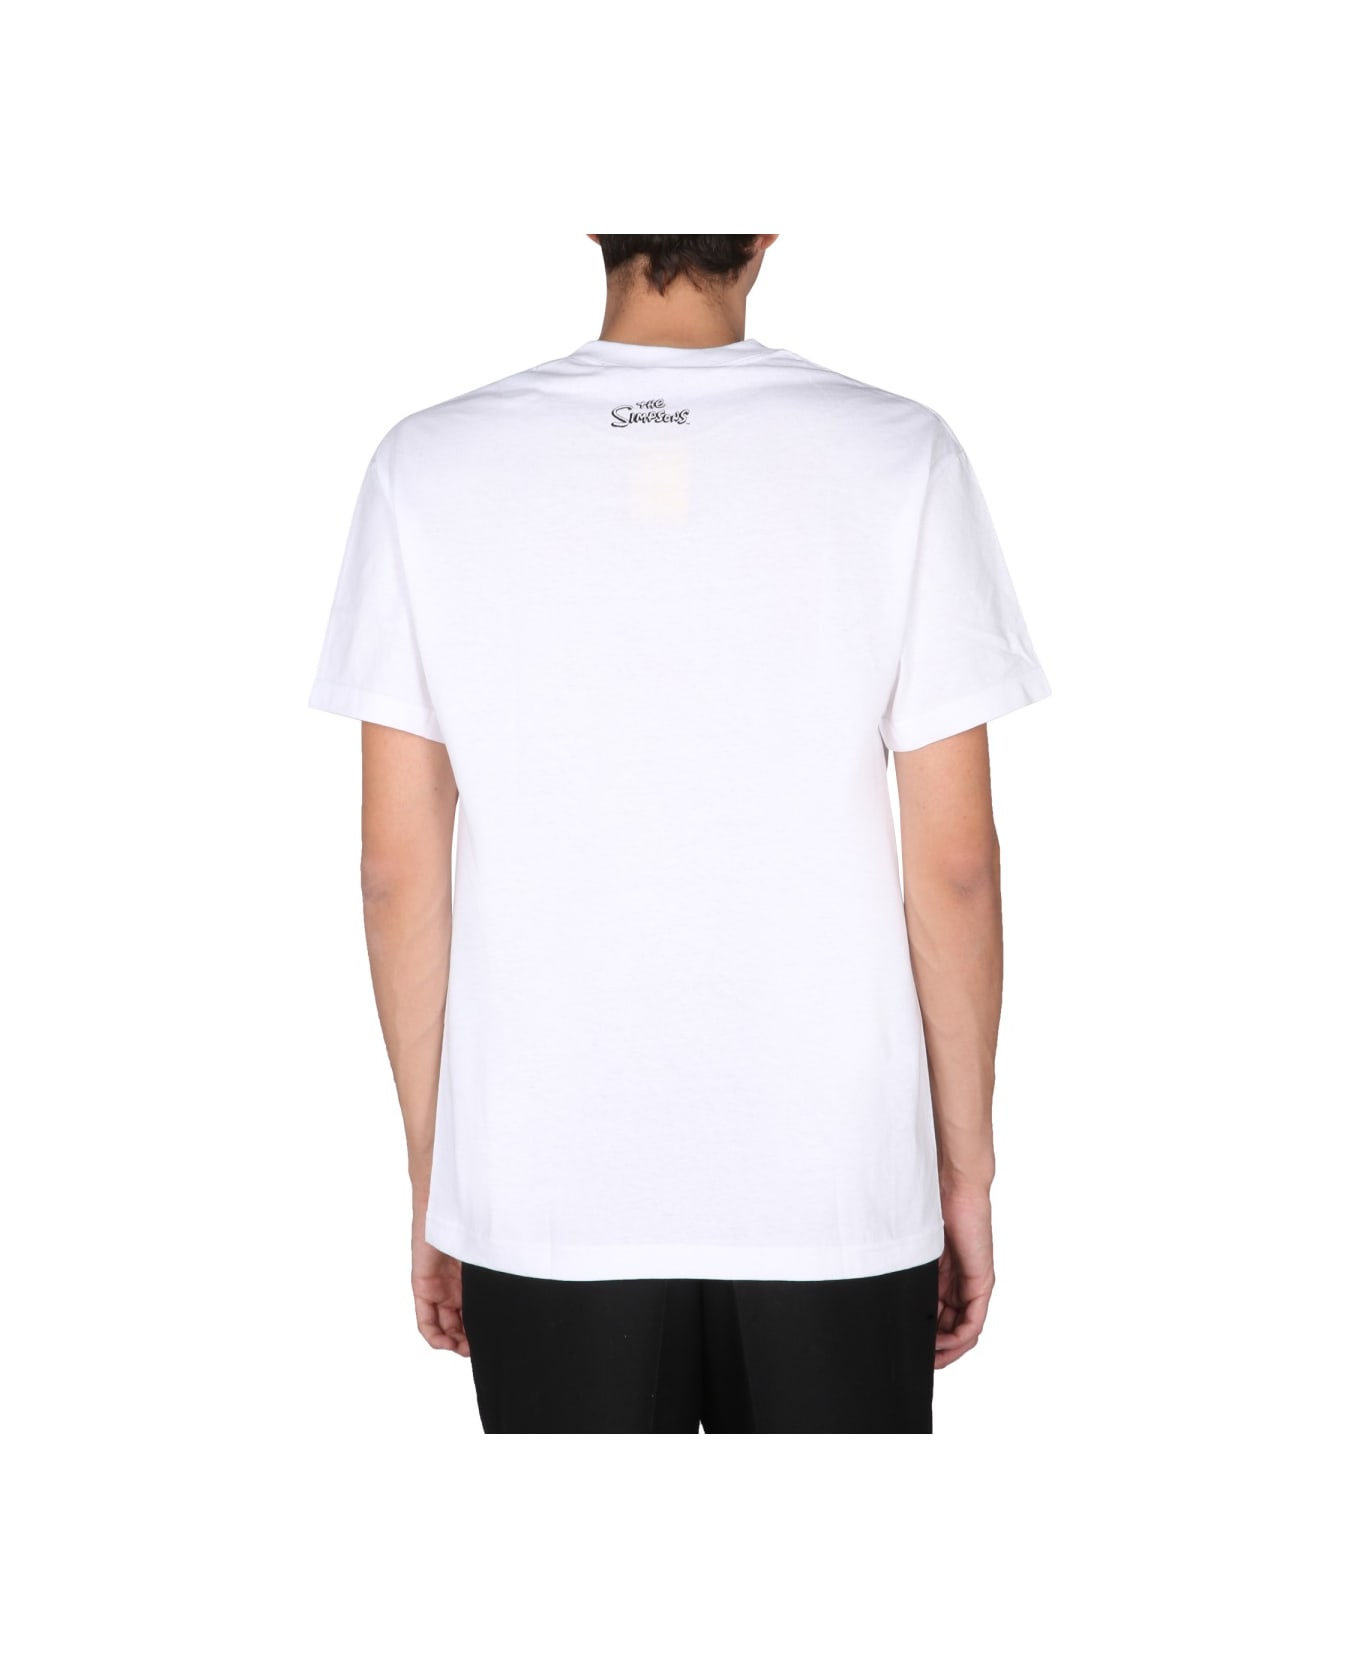 Market "devil Bart" T-shirt - WHITE